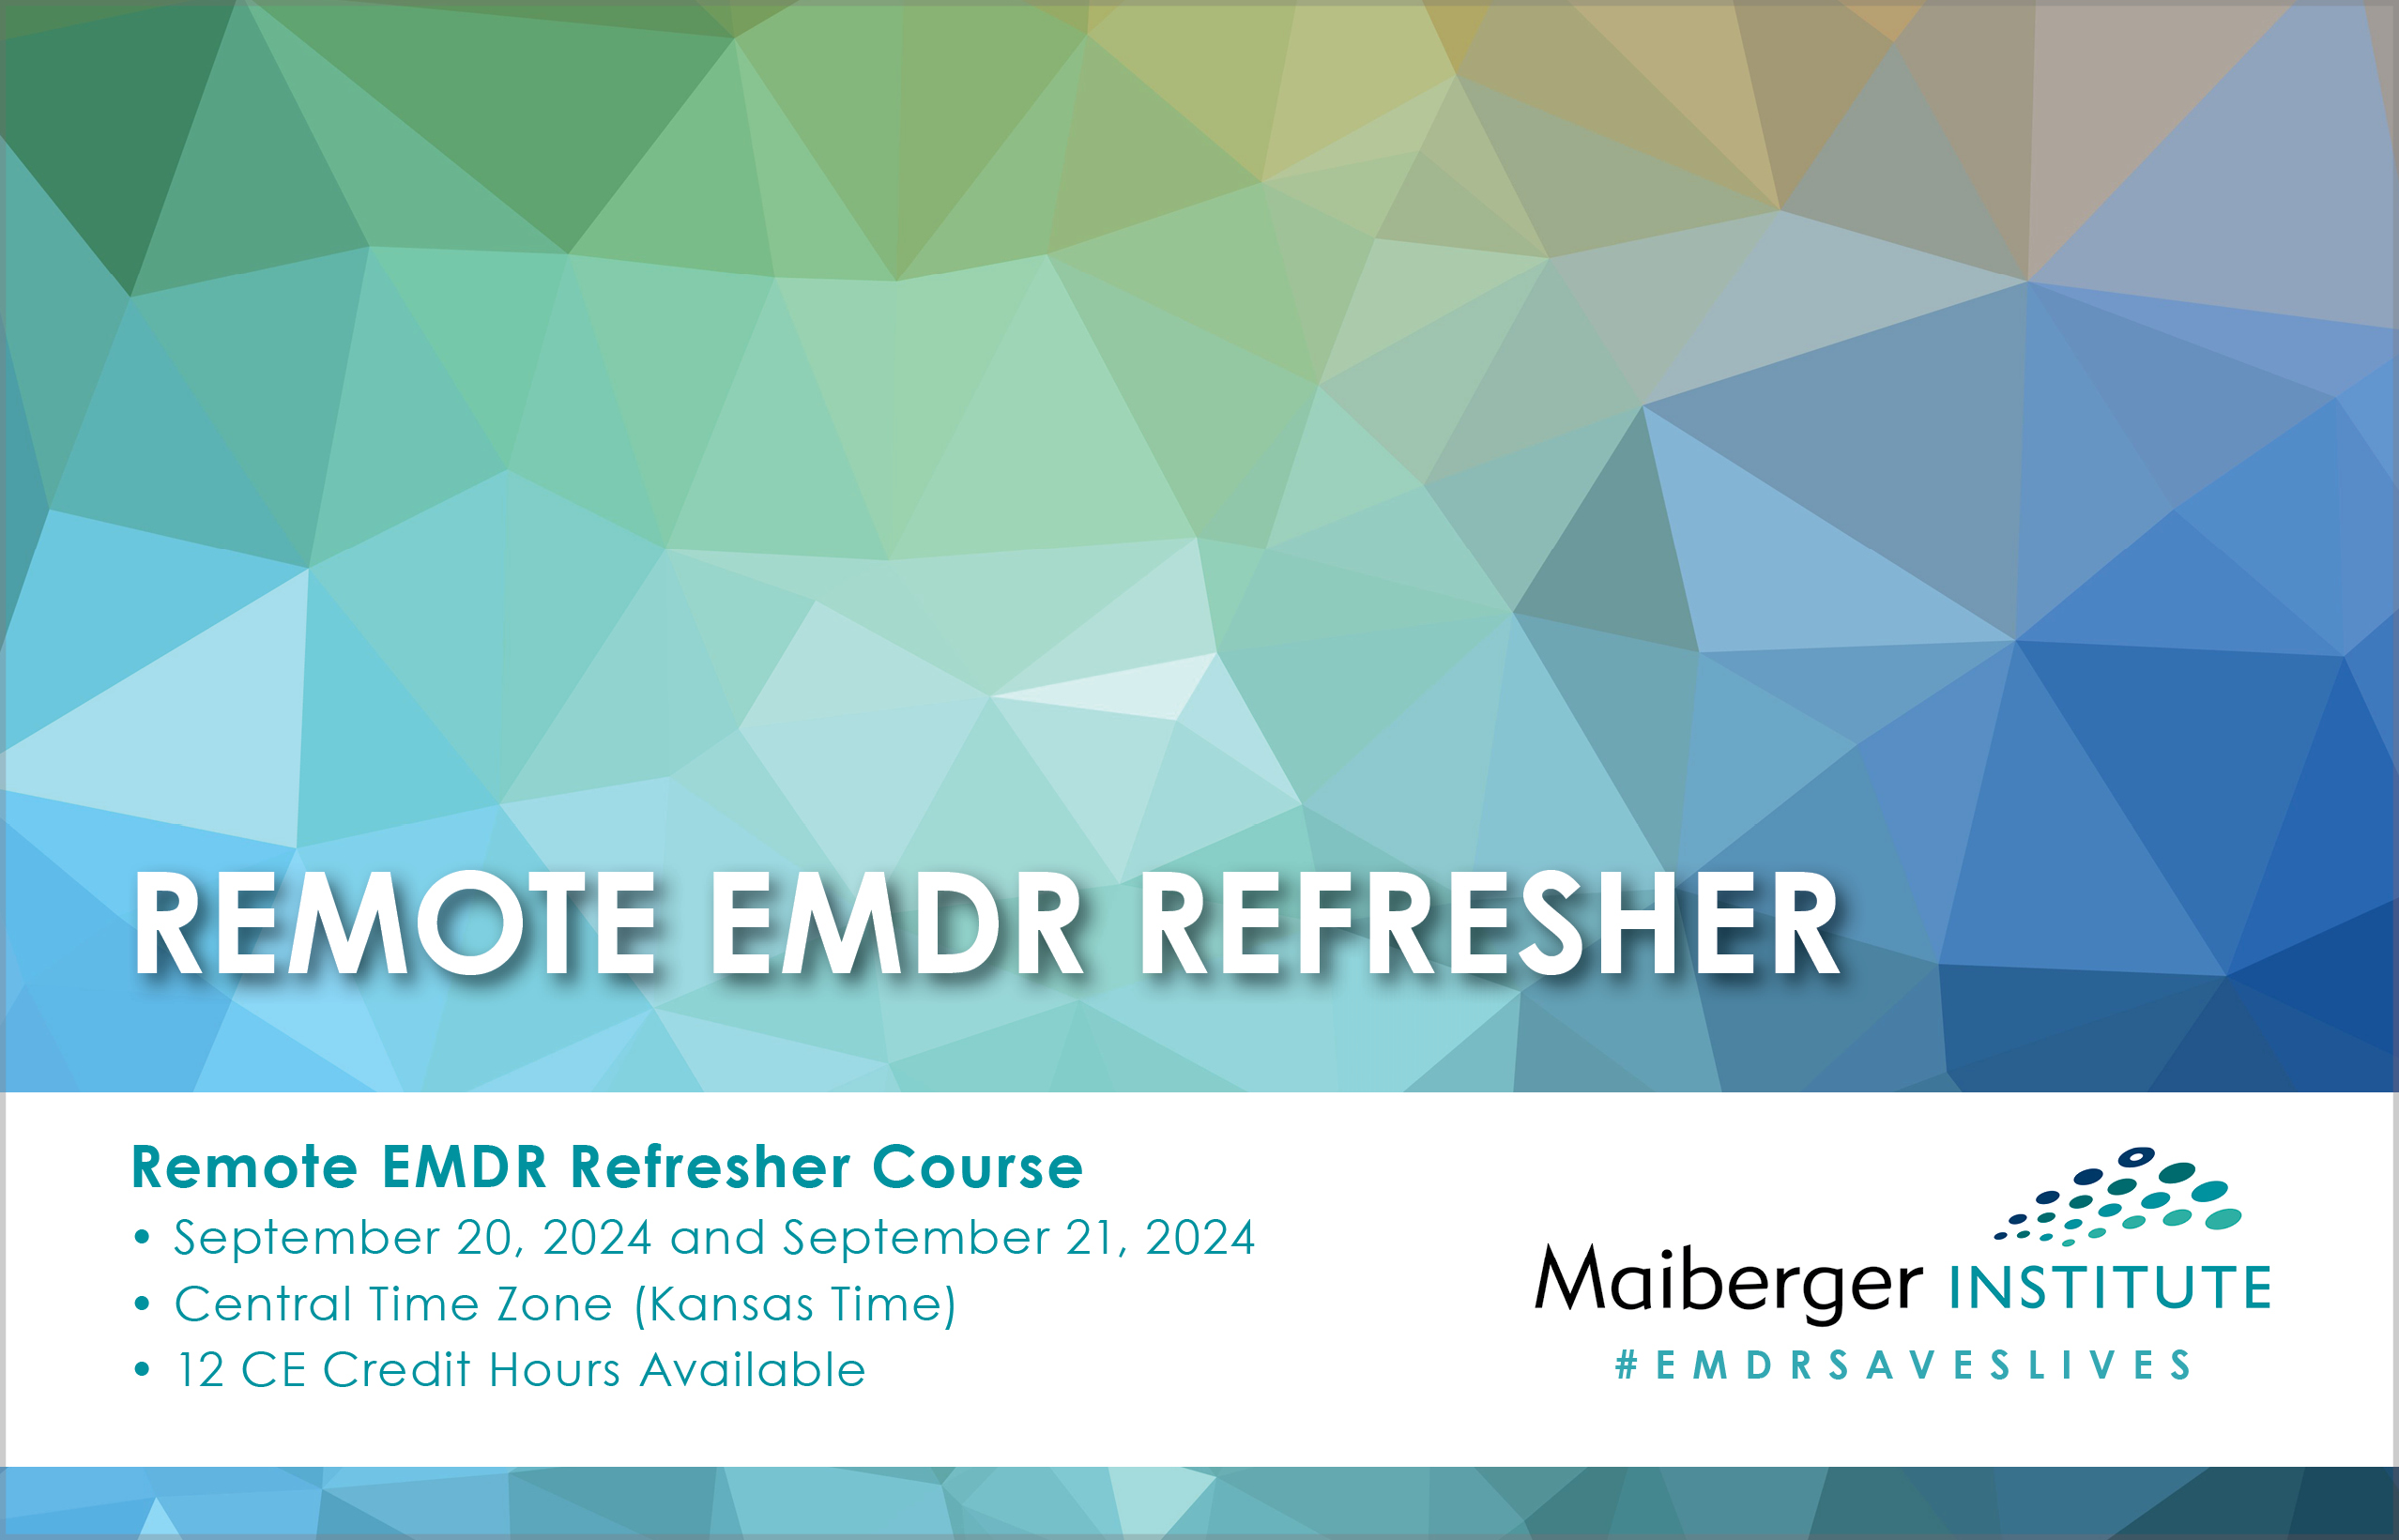 Remote EMDR Training Course - September 2024 - EMDR Events Calendar - Maiberger Institute